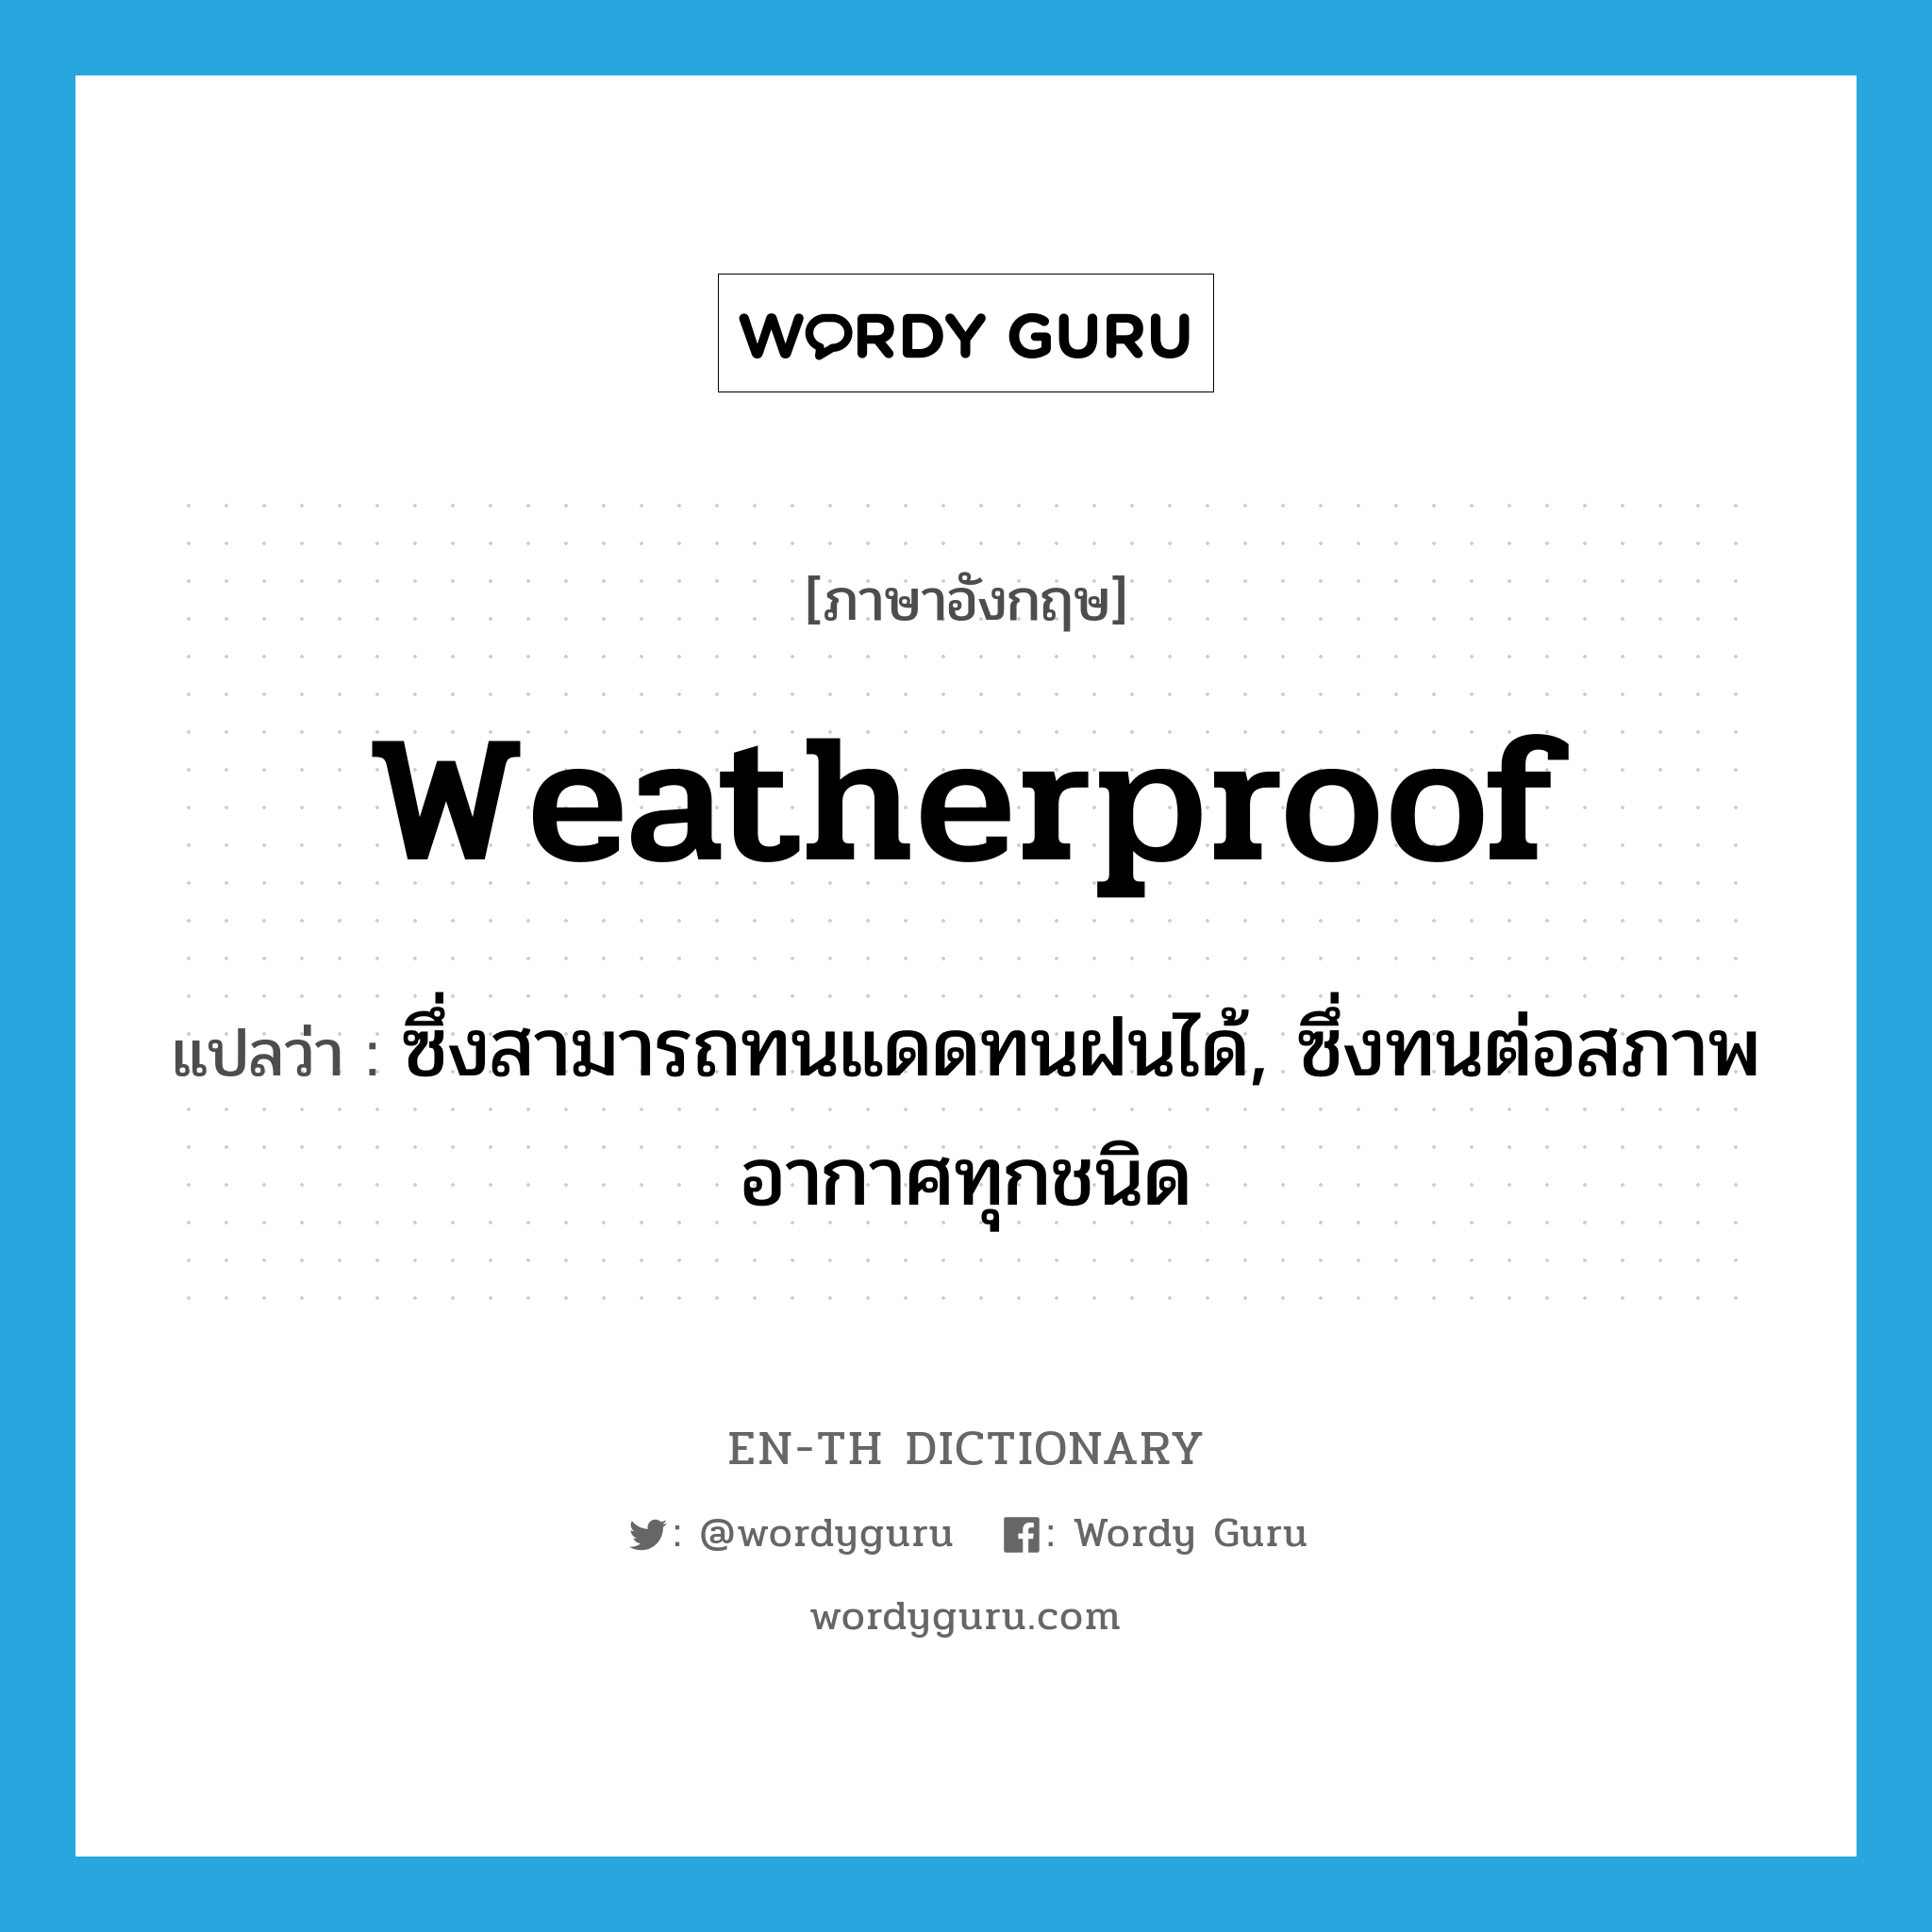 ซึ่งสามารถทนแดดทนฝนได้, ซึ่งทนต่อสภาพอากาศทุกชนิด ภาษาอังกฤษ?, คำศัพท์ภาษาอังกฤษ ซึ่งสามารถทนแดดทนฝนได้, ซึ่งทนต่อสภาพอากาศทุกชนิด แปลว่า weatherproof ประเภท ADJ หมวด ADJ